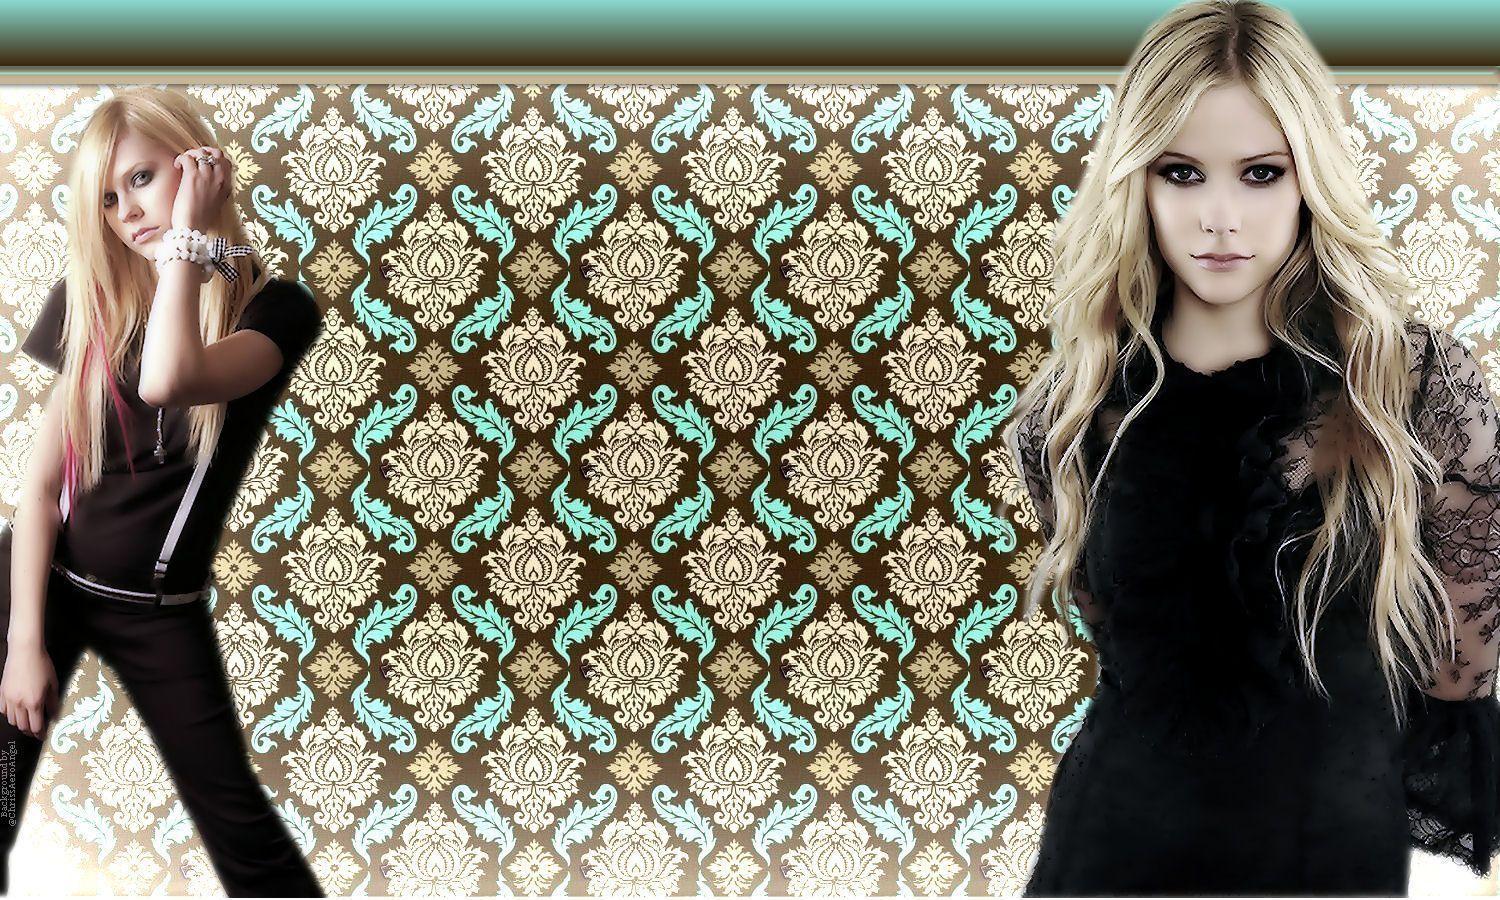 Avril Lavigne Twitter Background, Avril Lavigne Twitter Themes